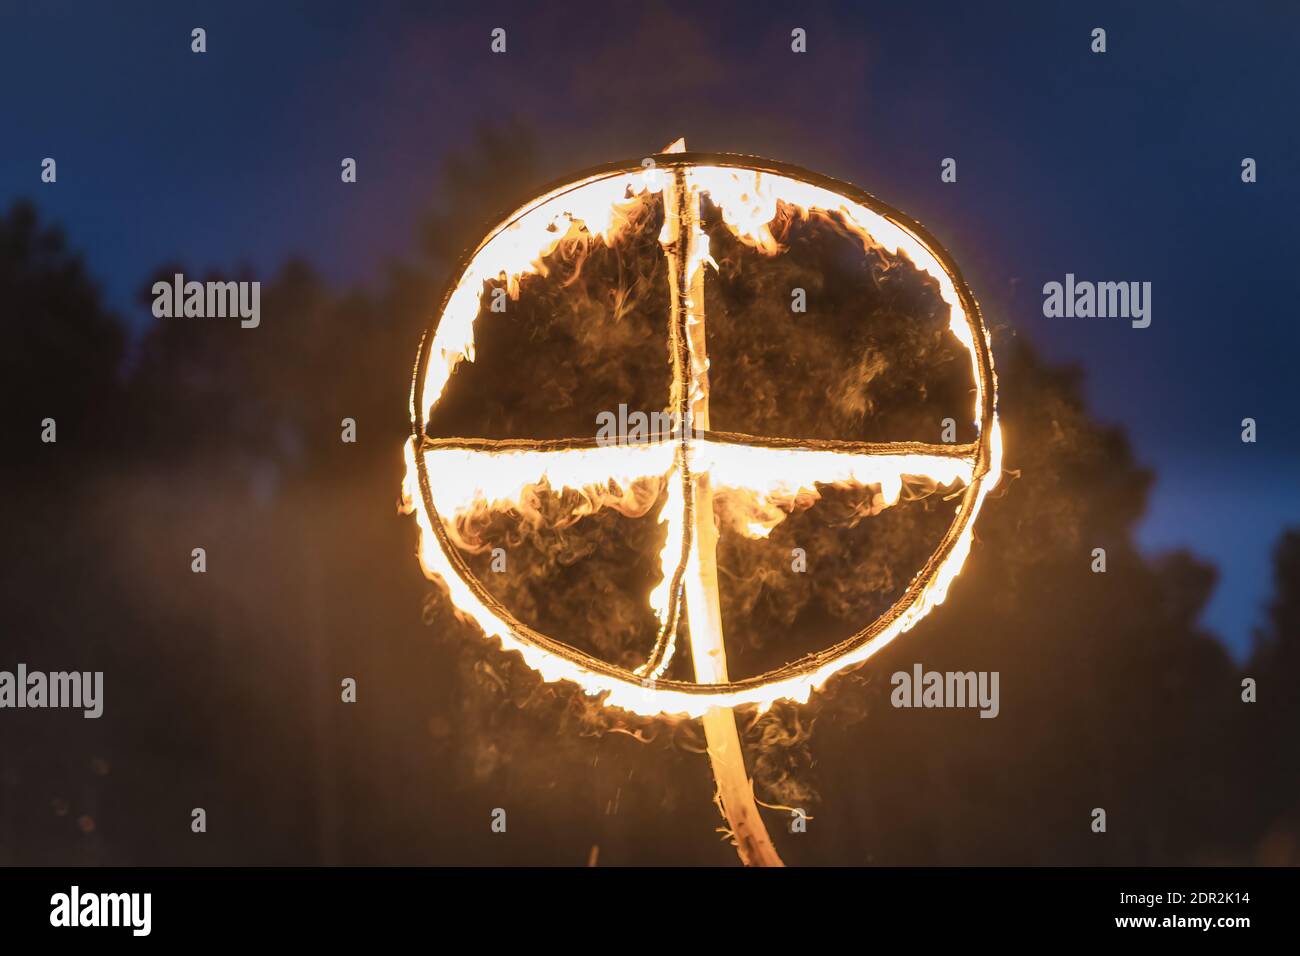 Symbole brûlant du soleil, une croix de soleil ou une roue solaire à la reconstitution païenne de la nuit Kupala, appelé en Pologne NOC Kupaly. Banque D'Images